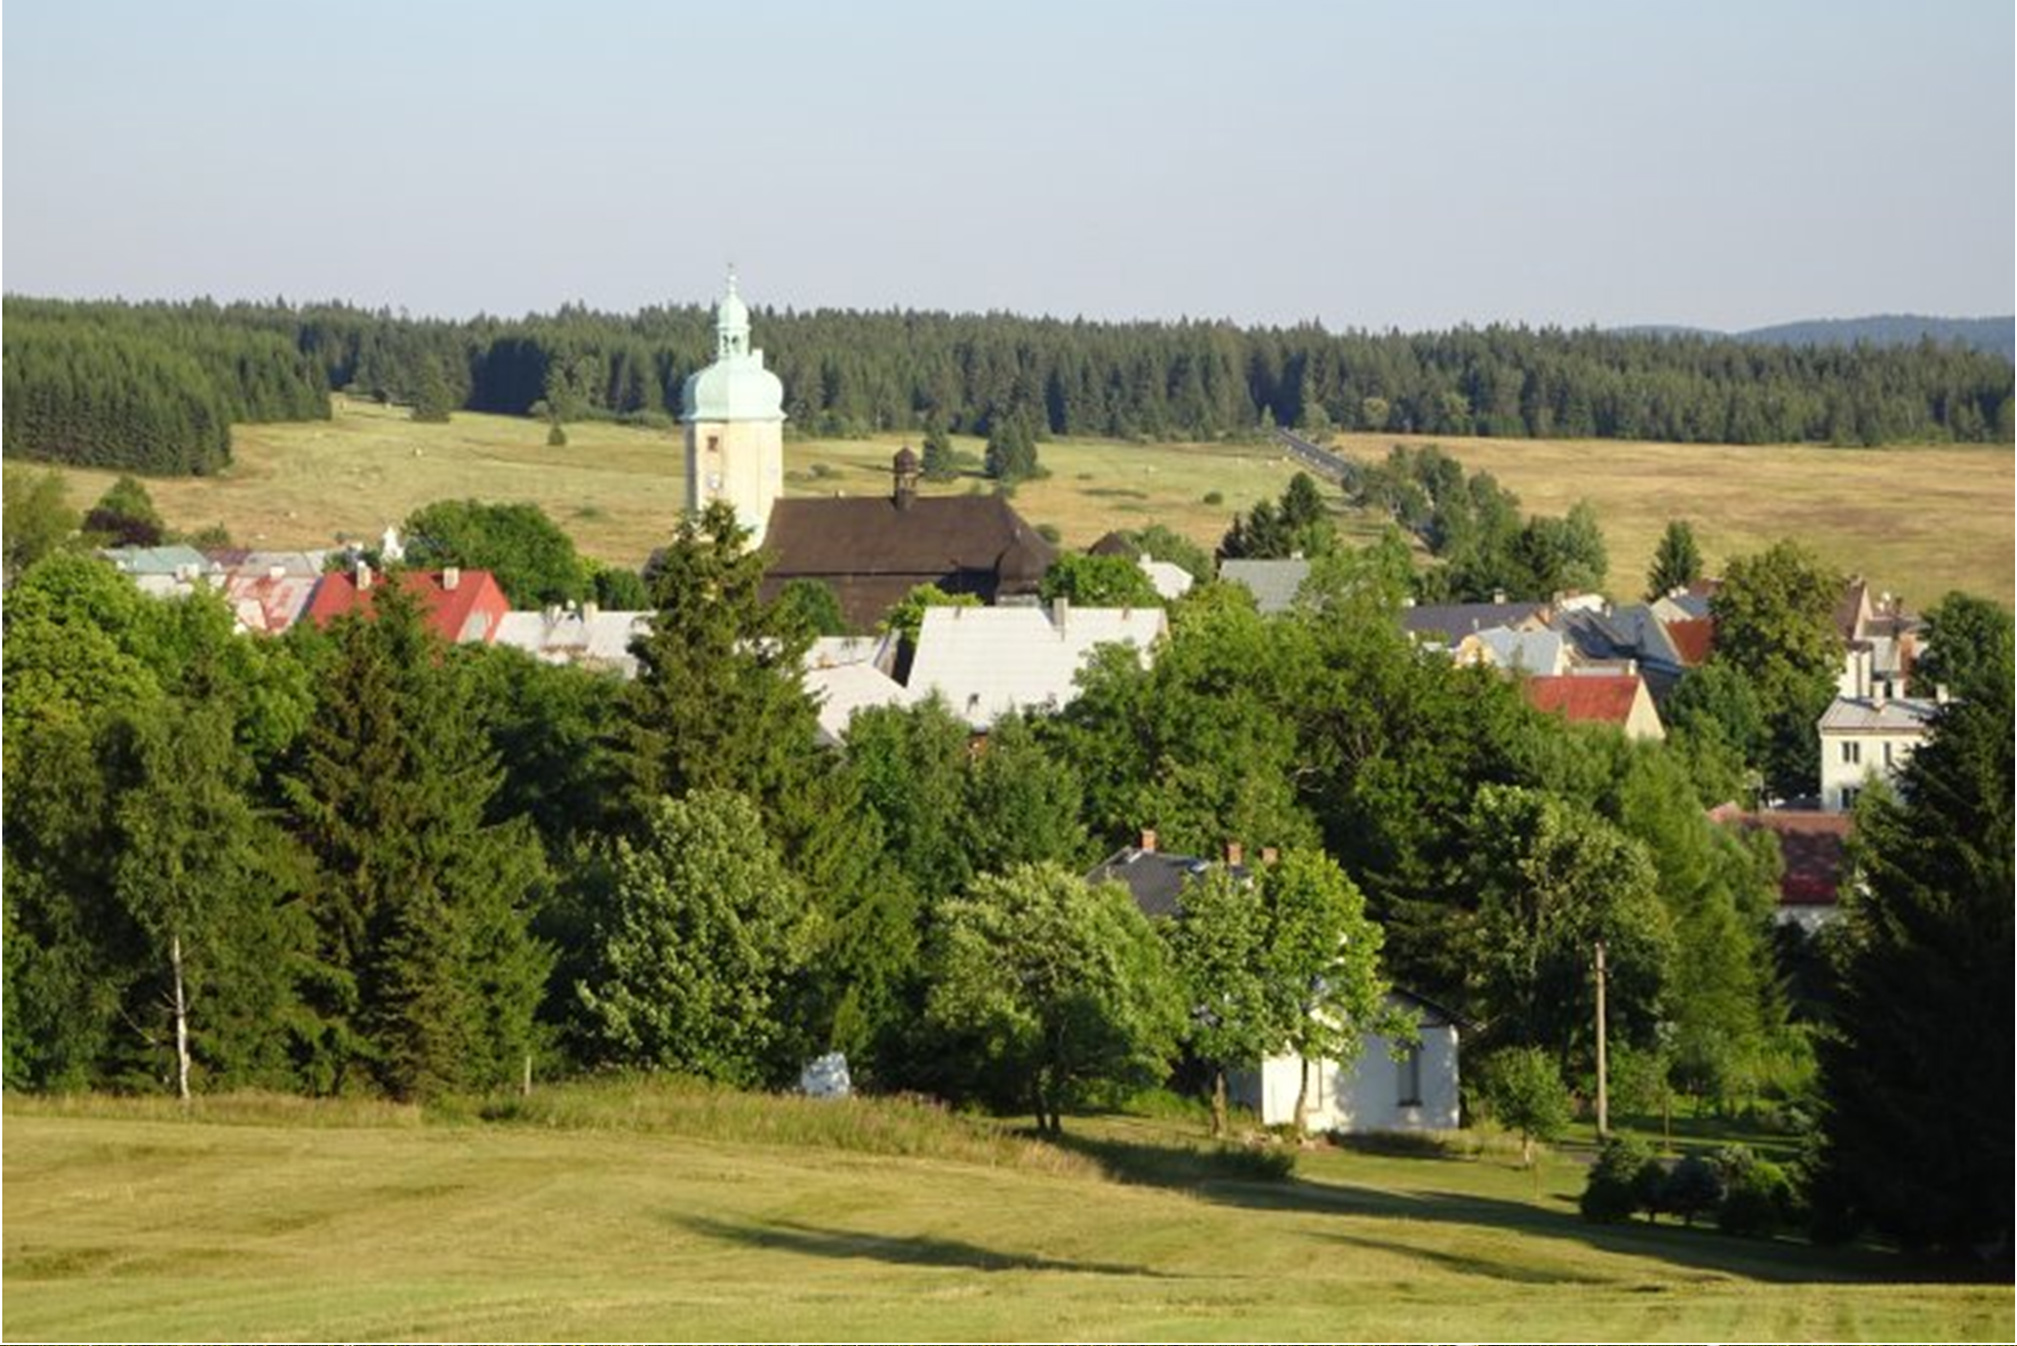 Integrální součástí Krušných hor jsou i menší obce, které dotvářejí jejich charakteristický ráz. Archiv AOPK ČR